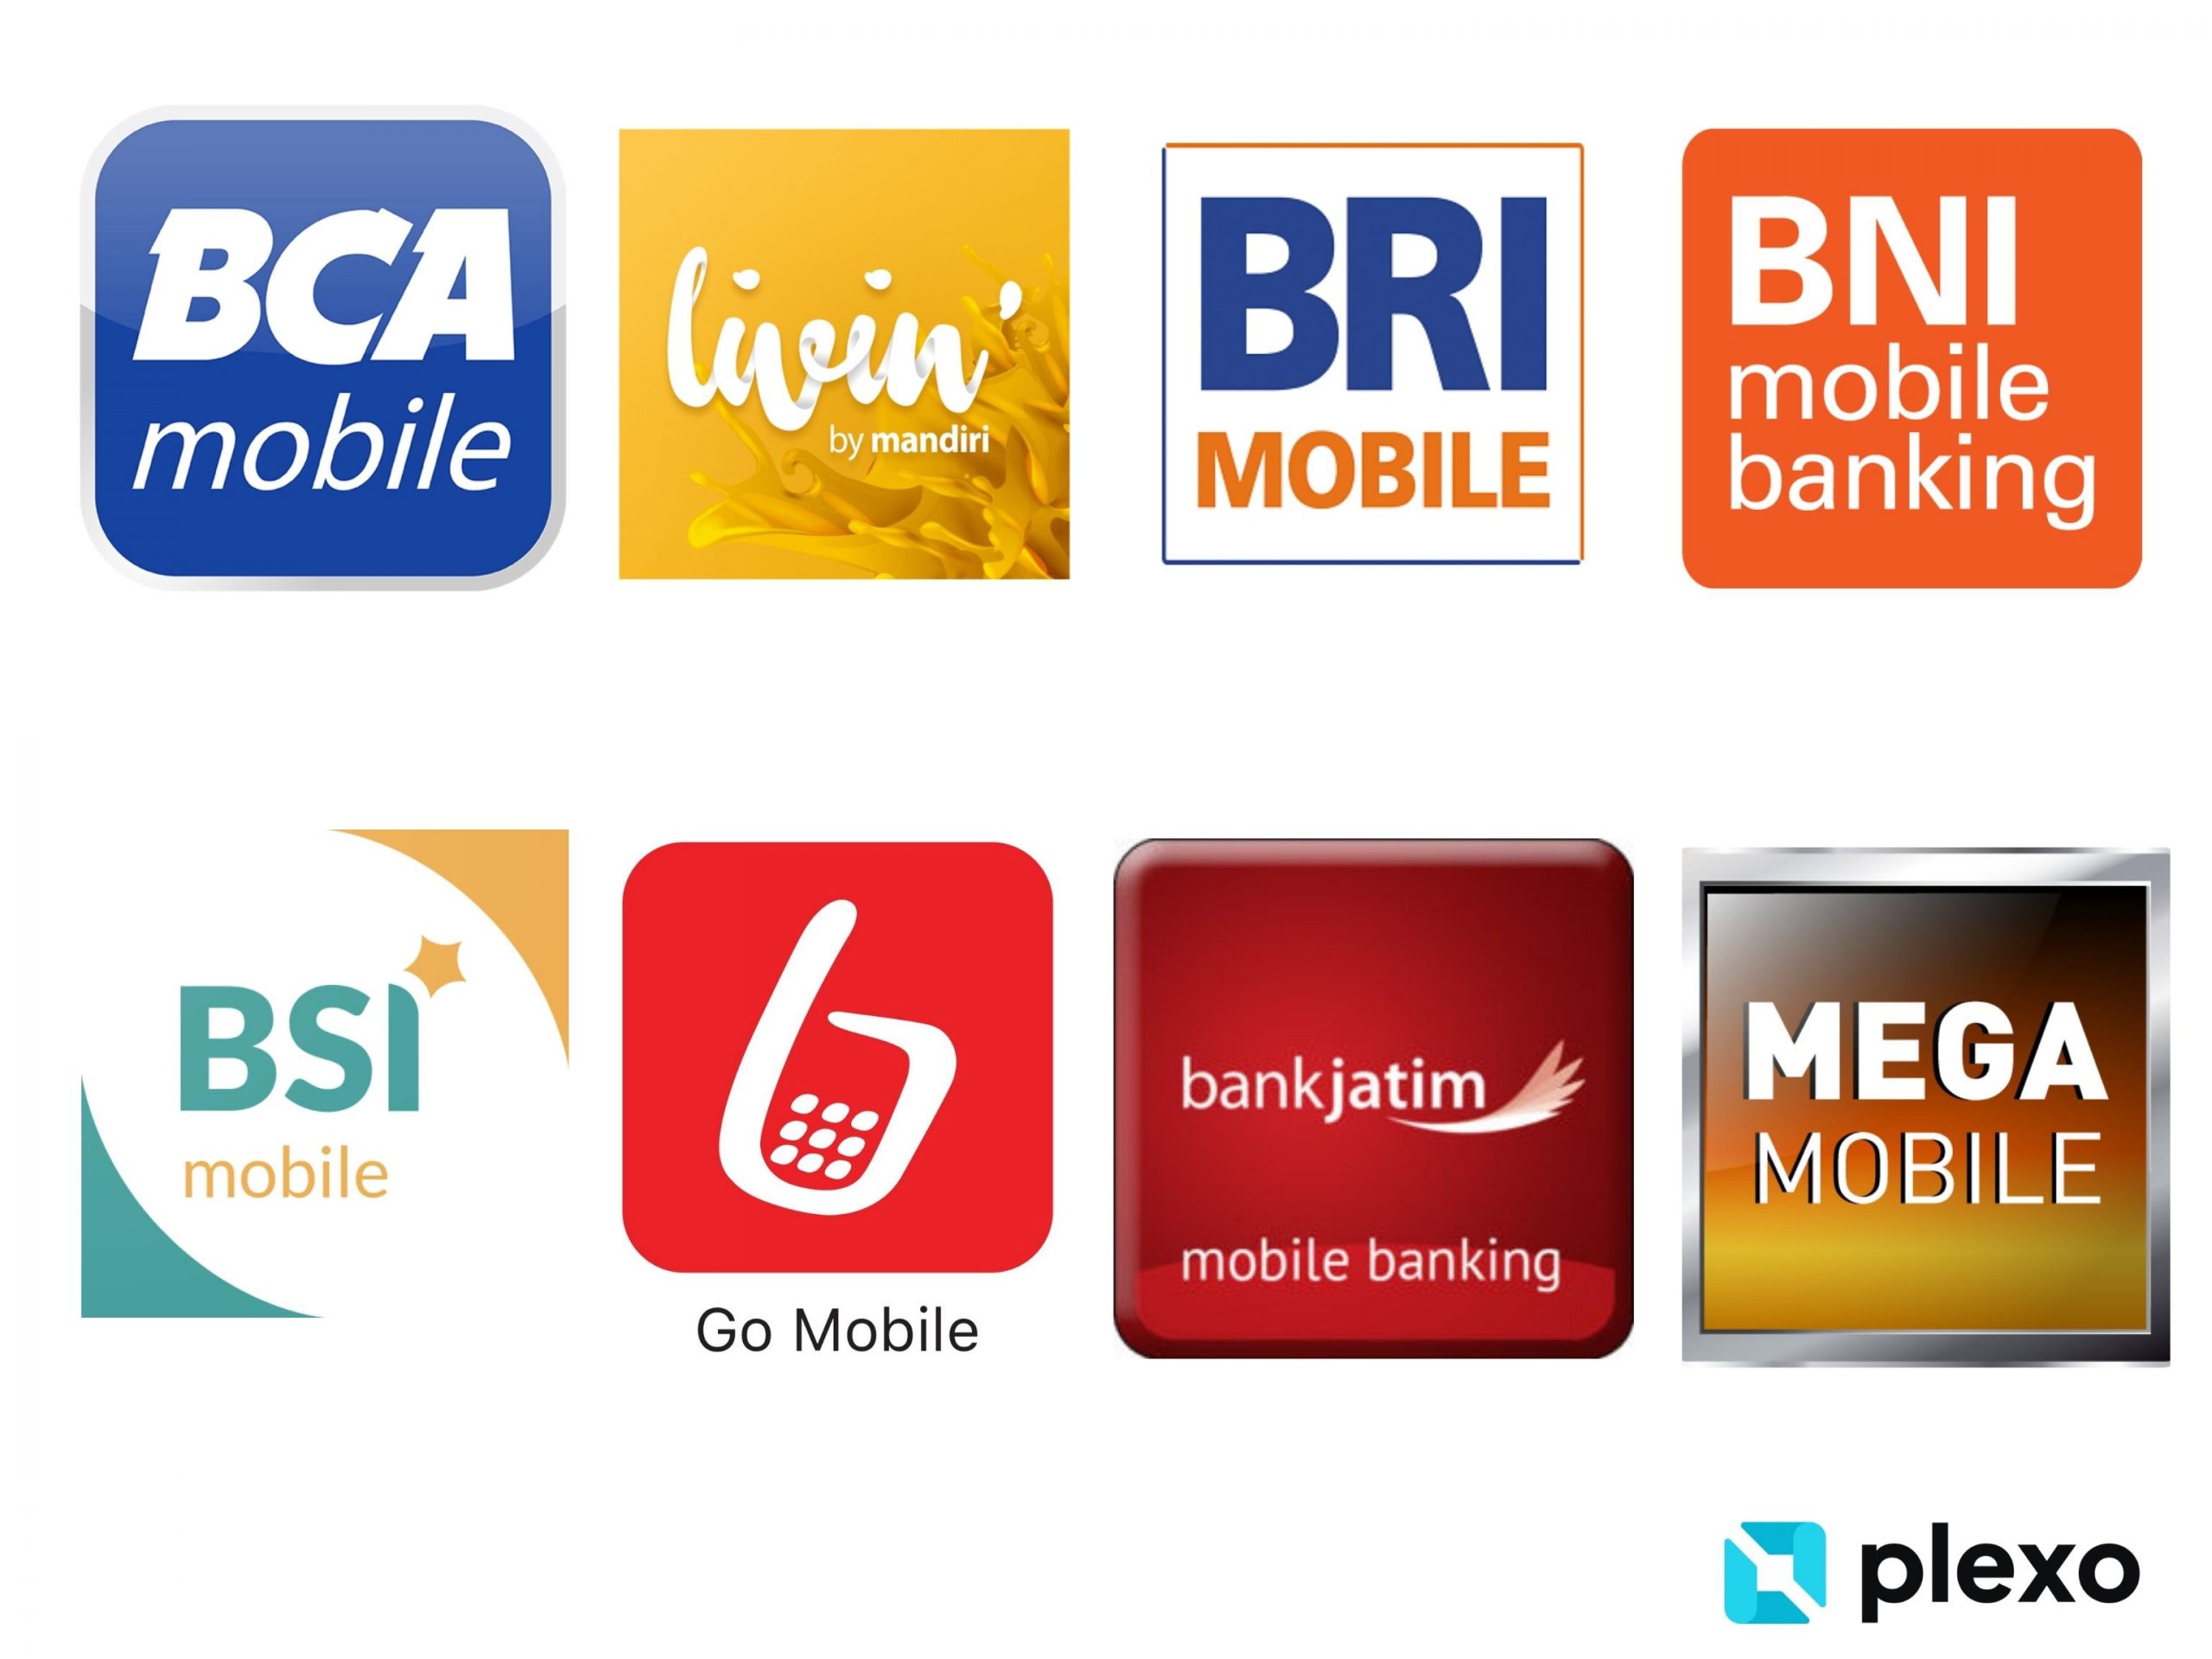 8 Logo aplikasi mobile banking populer di Indonesia yaitu, BCA Mobile, Livin by Mandiri, BRI Mobile, BNI mobile banking, BSI Mobile, Go Mobile, Bank Jatim, dan Mega Mobile. 